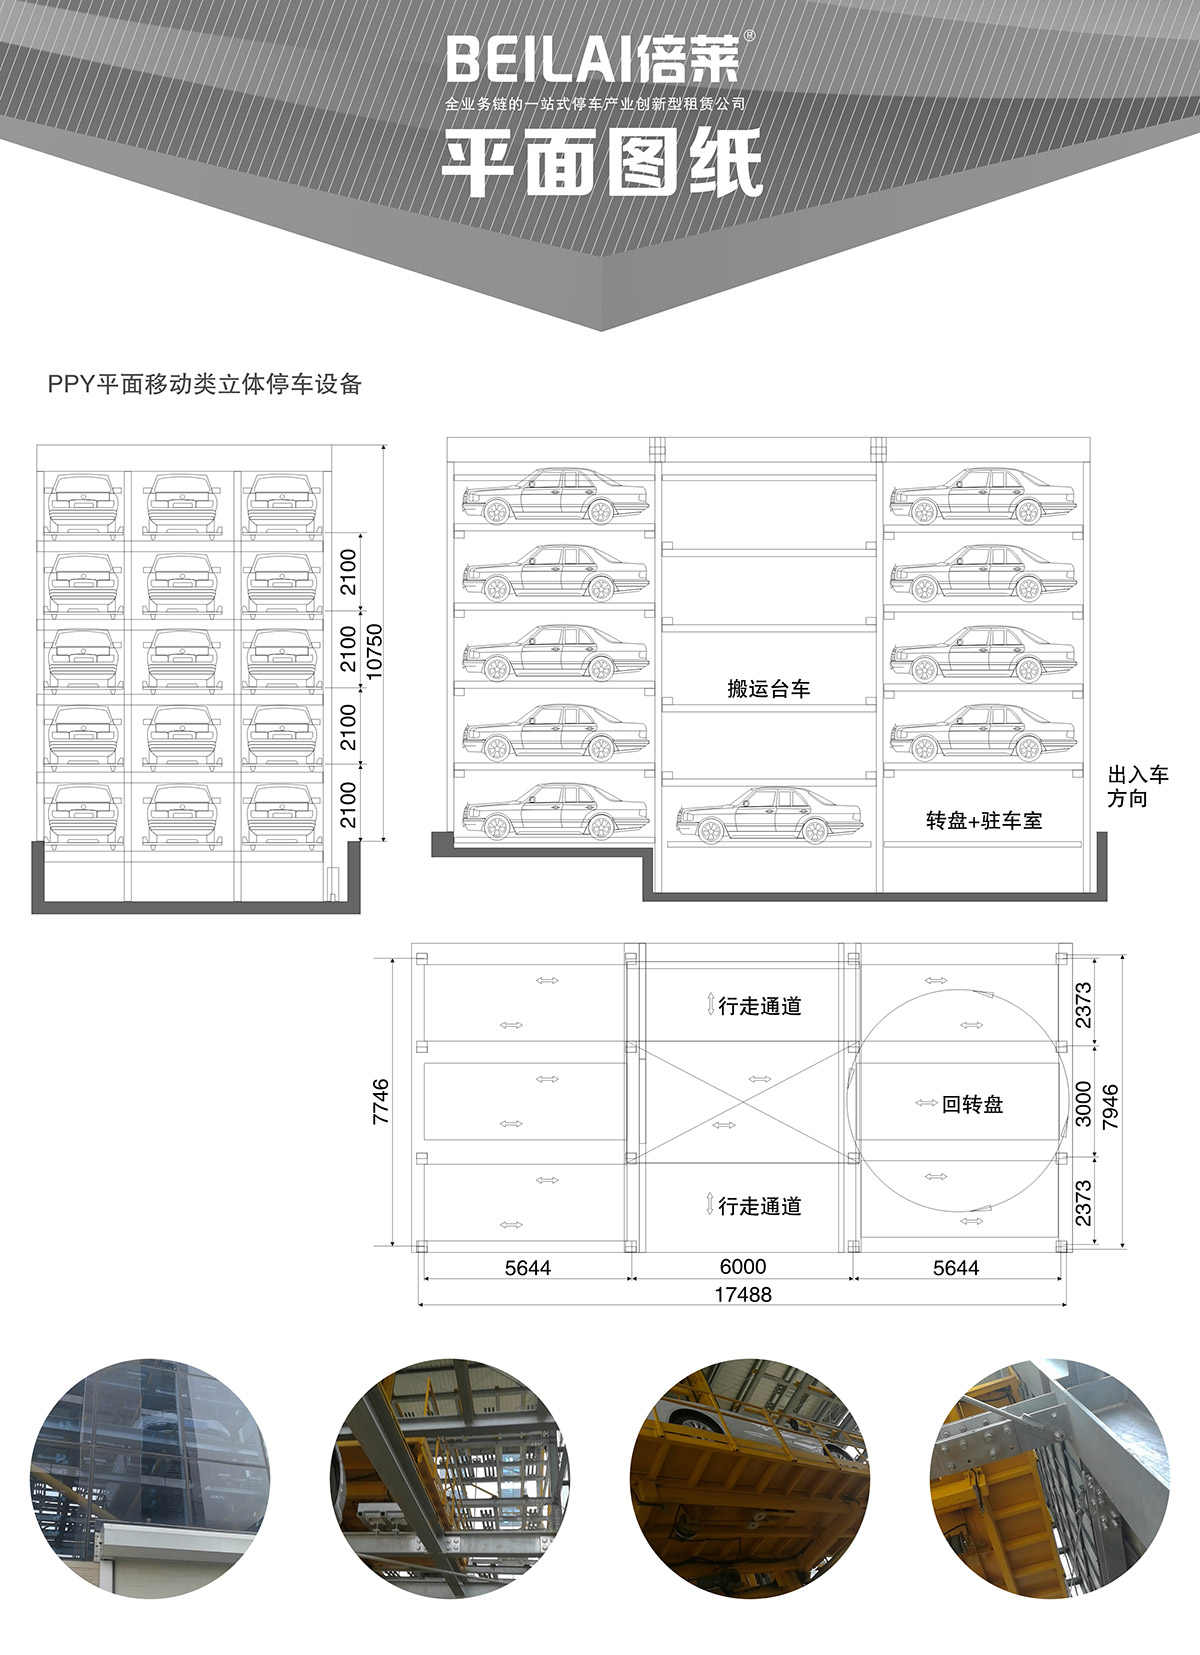 四川成都平面移动立体停车设备平面图纸.jpg